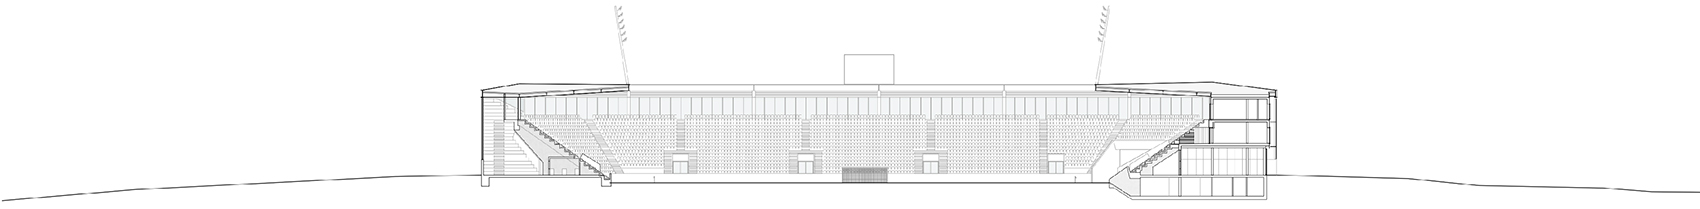 洛桑市新足球场馆，瑞士/散发宁静感的市郊体育设施-63